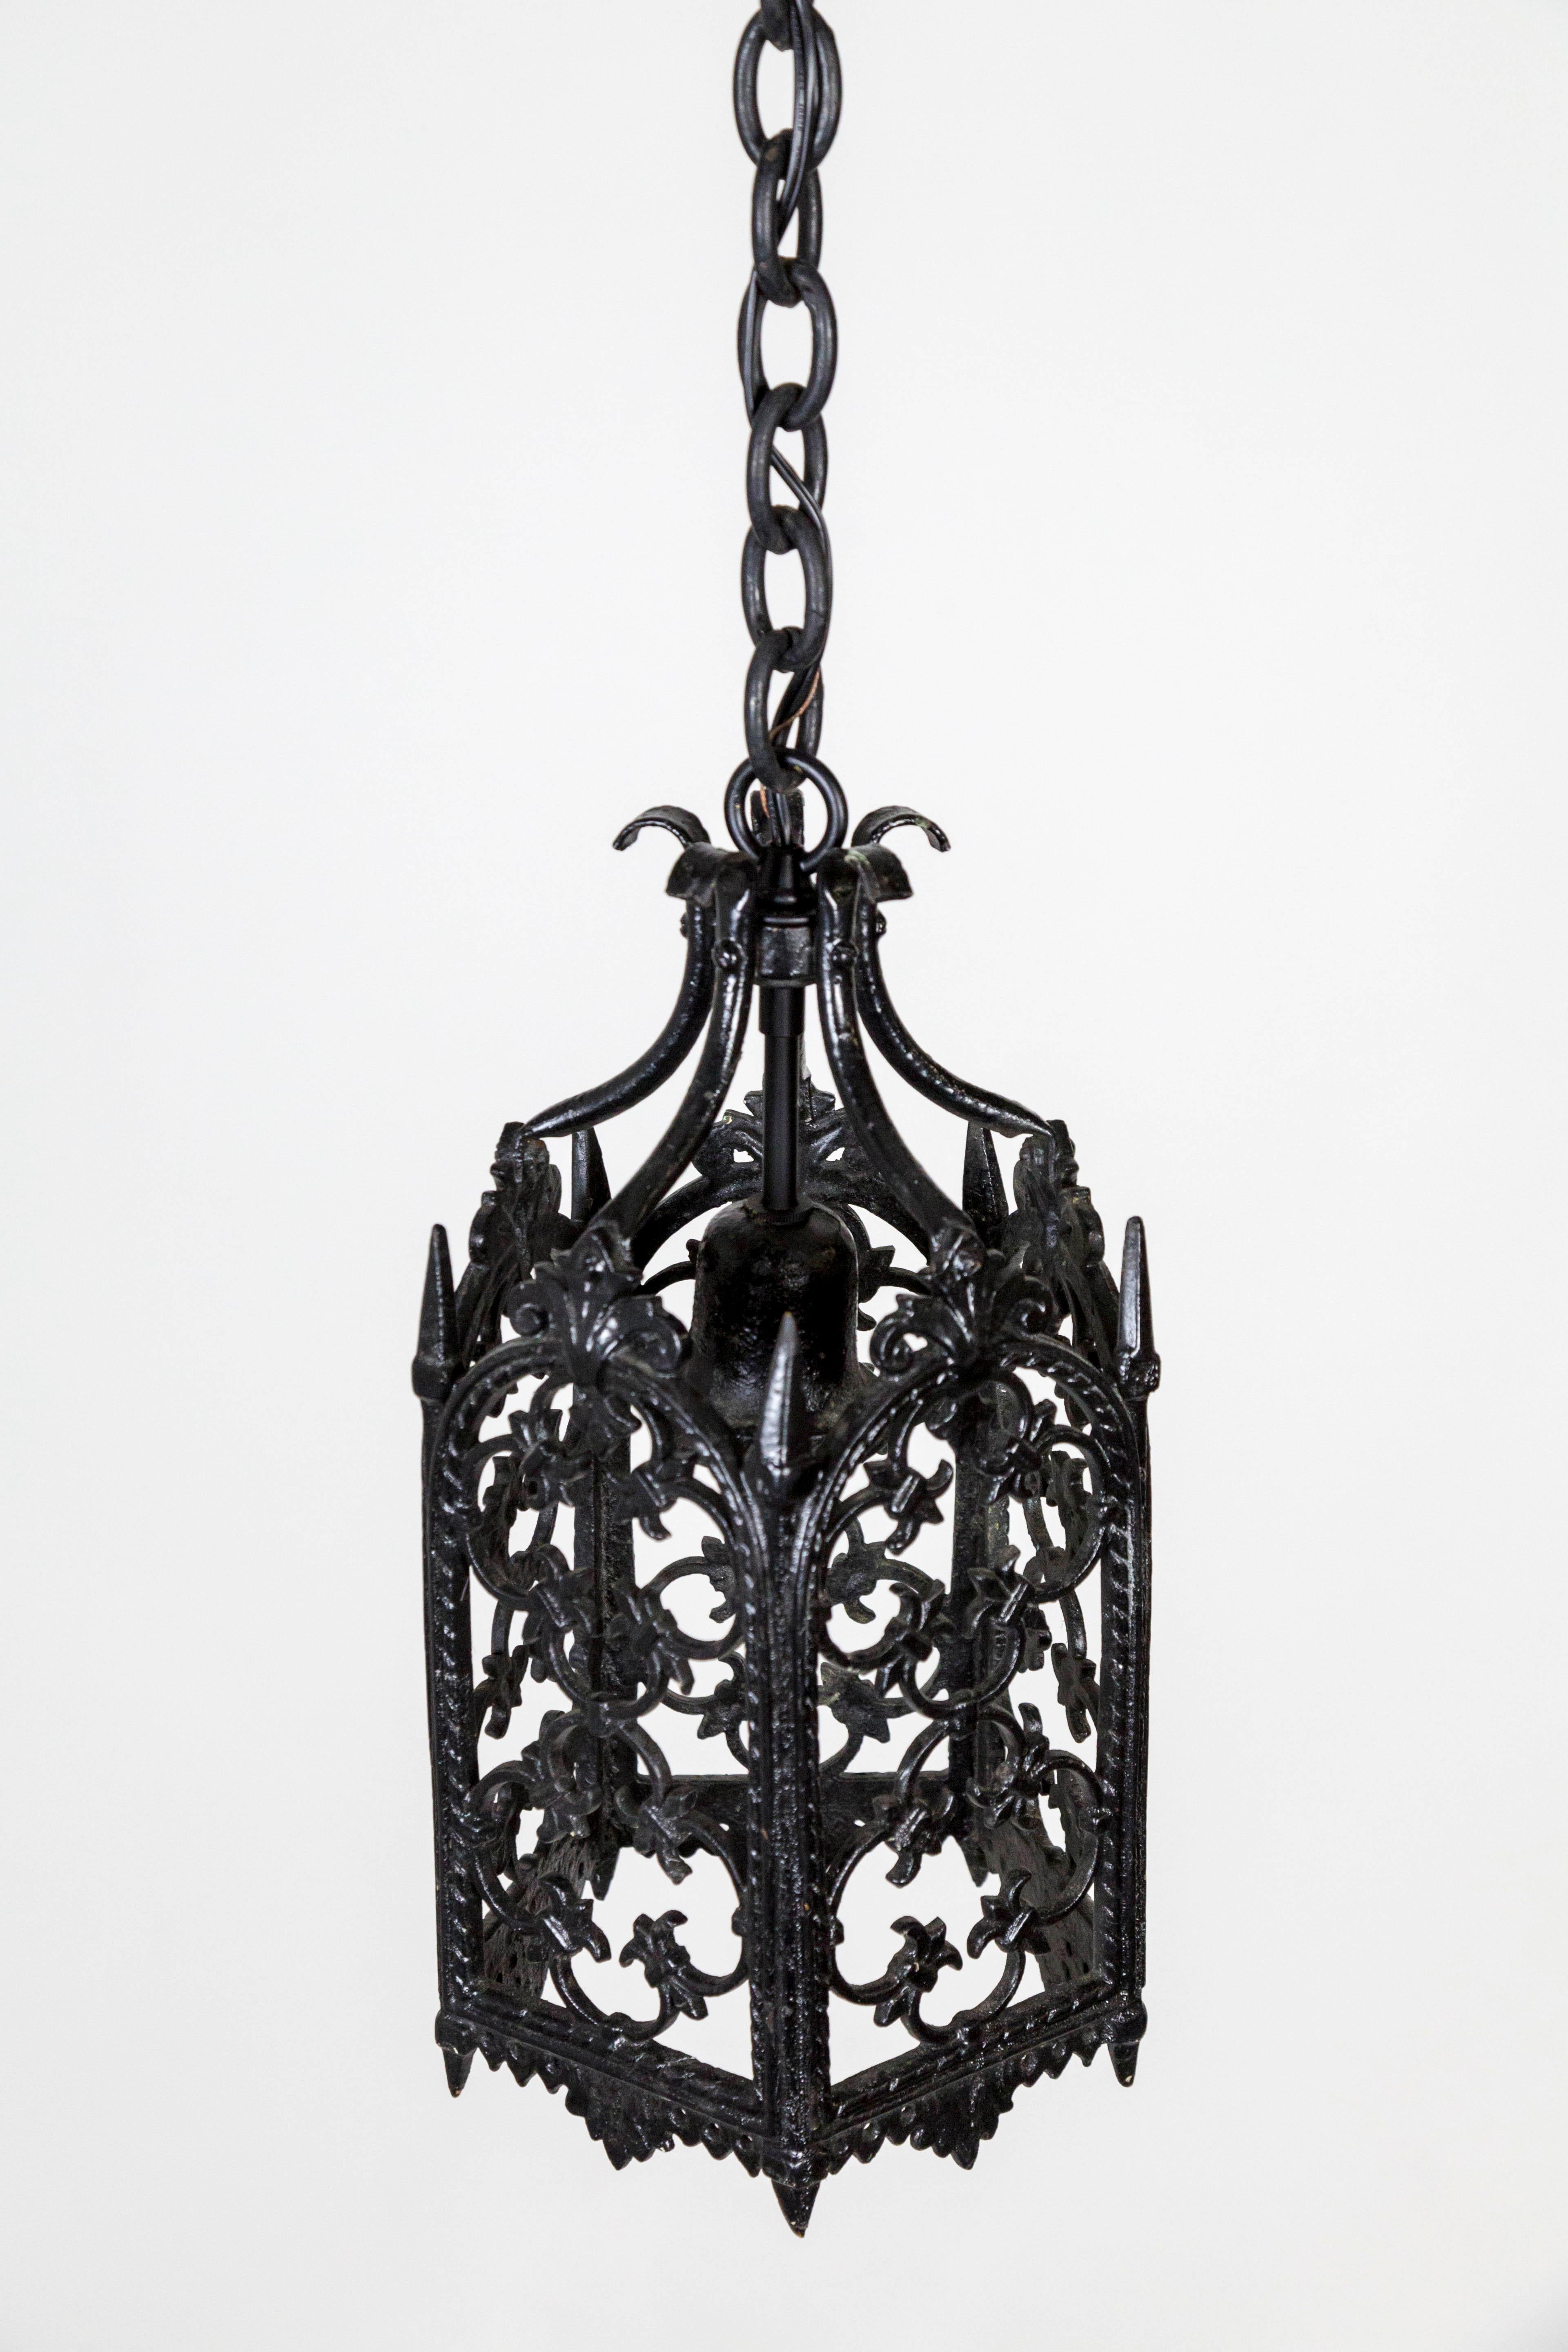 Gothic Revival Black Gothic Wrought Iron Lantern